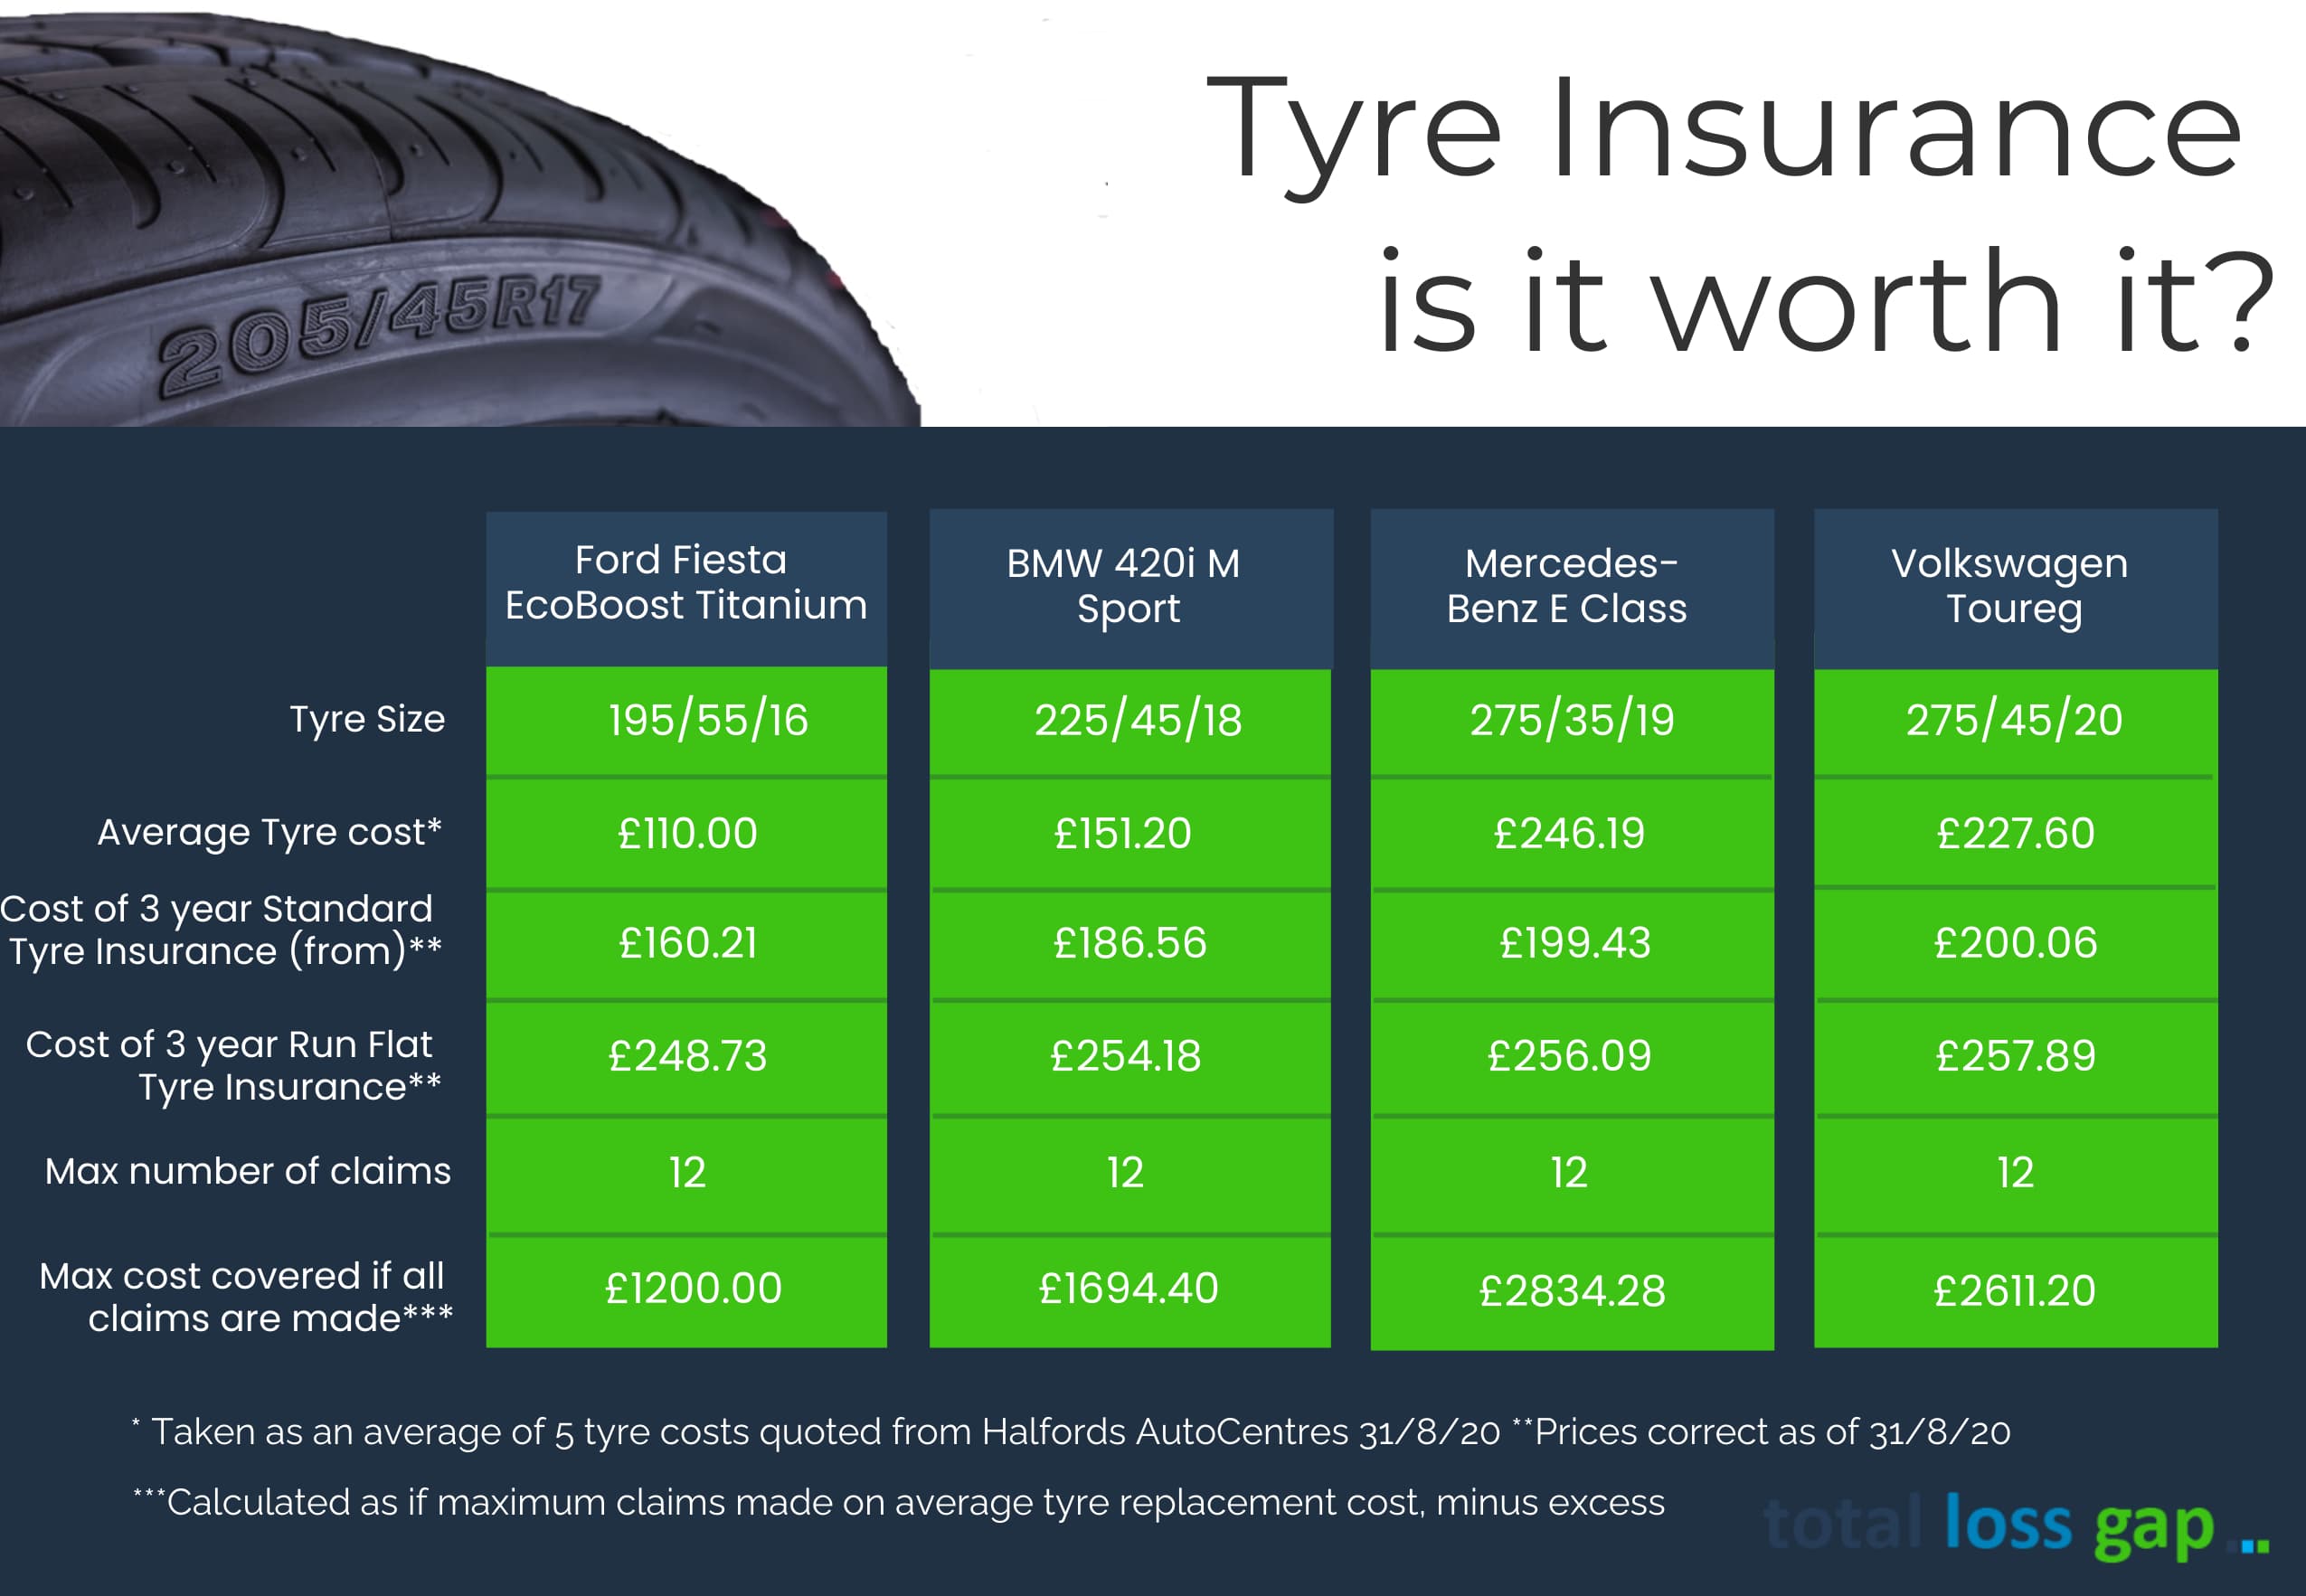 Tyre Insurance is it worth it